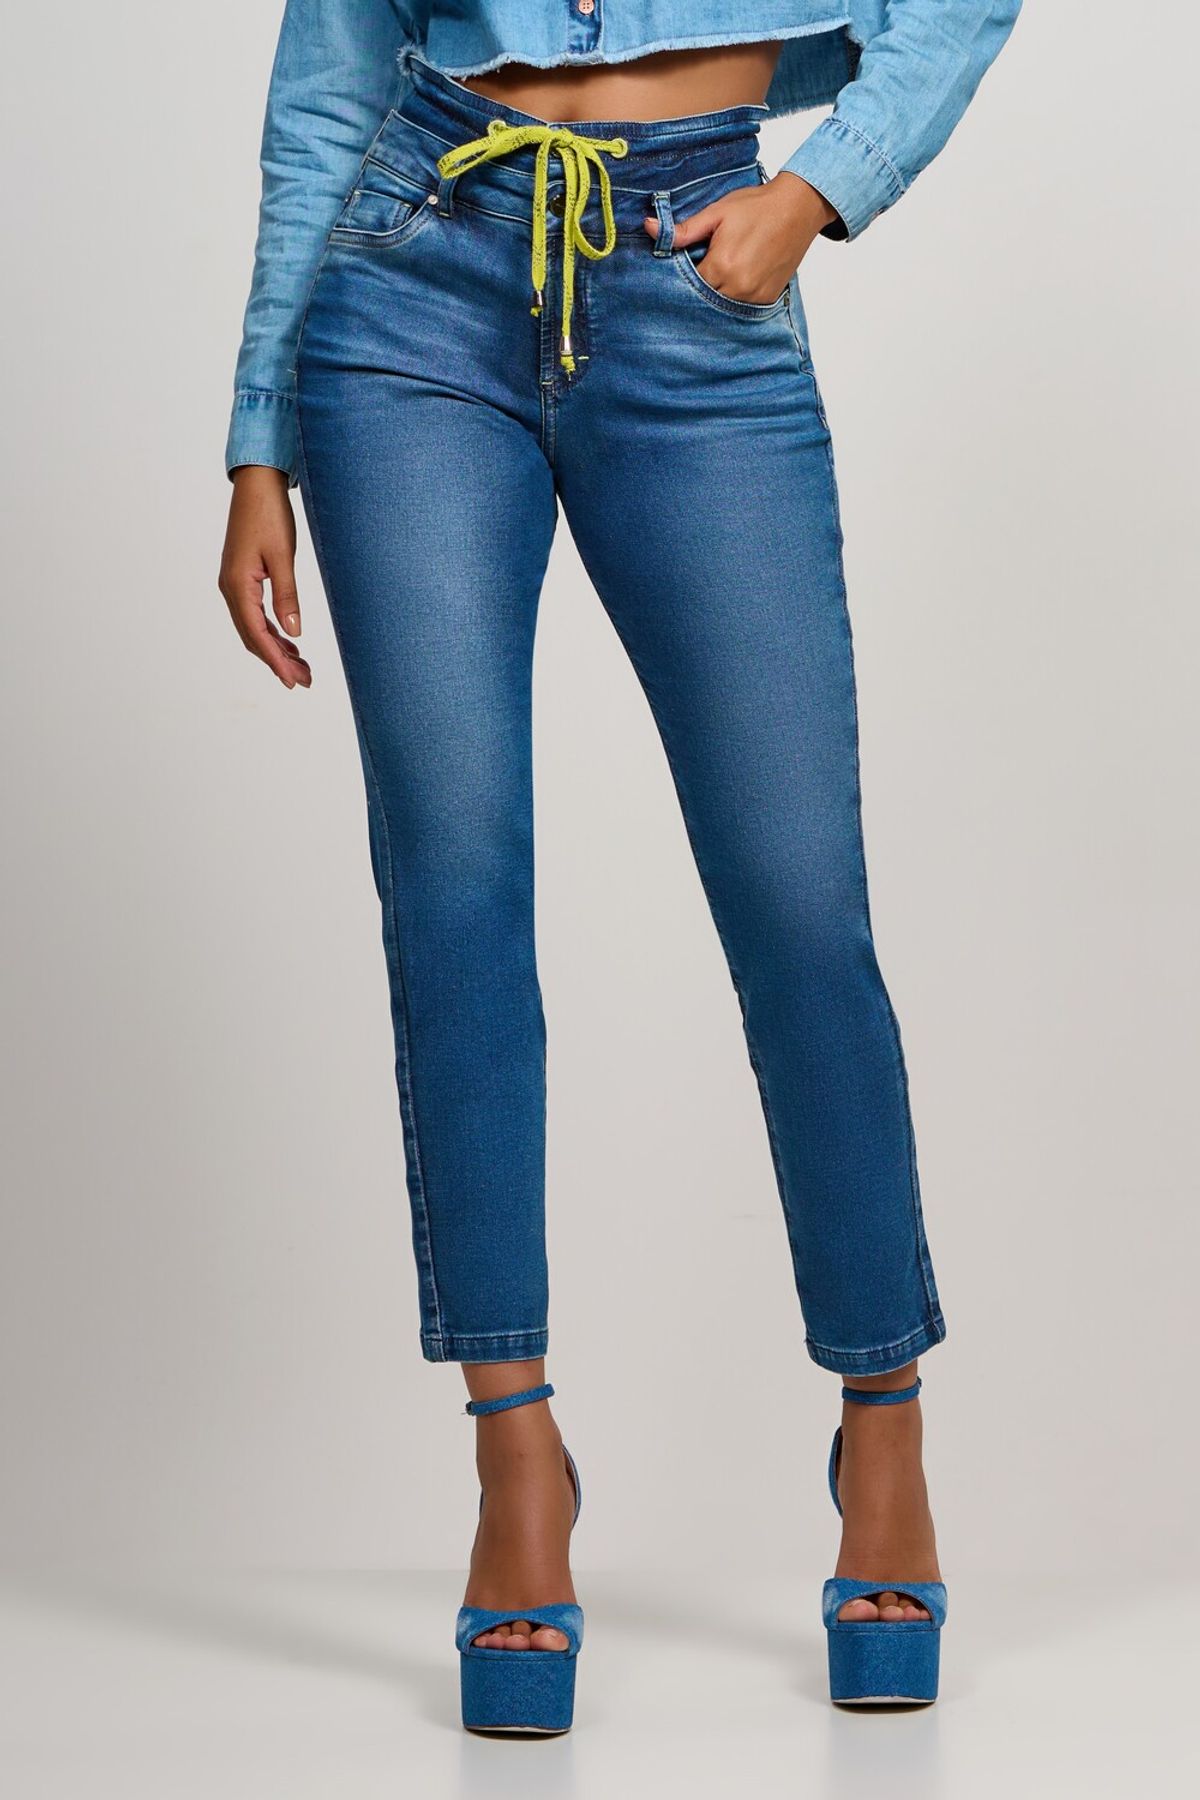 Calça Patogê feminina double cut jeans cintura média (G3) CL36836 - patoge